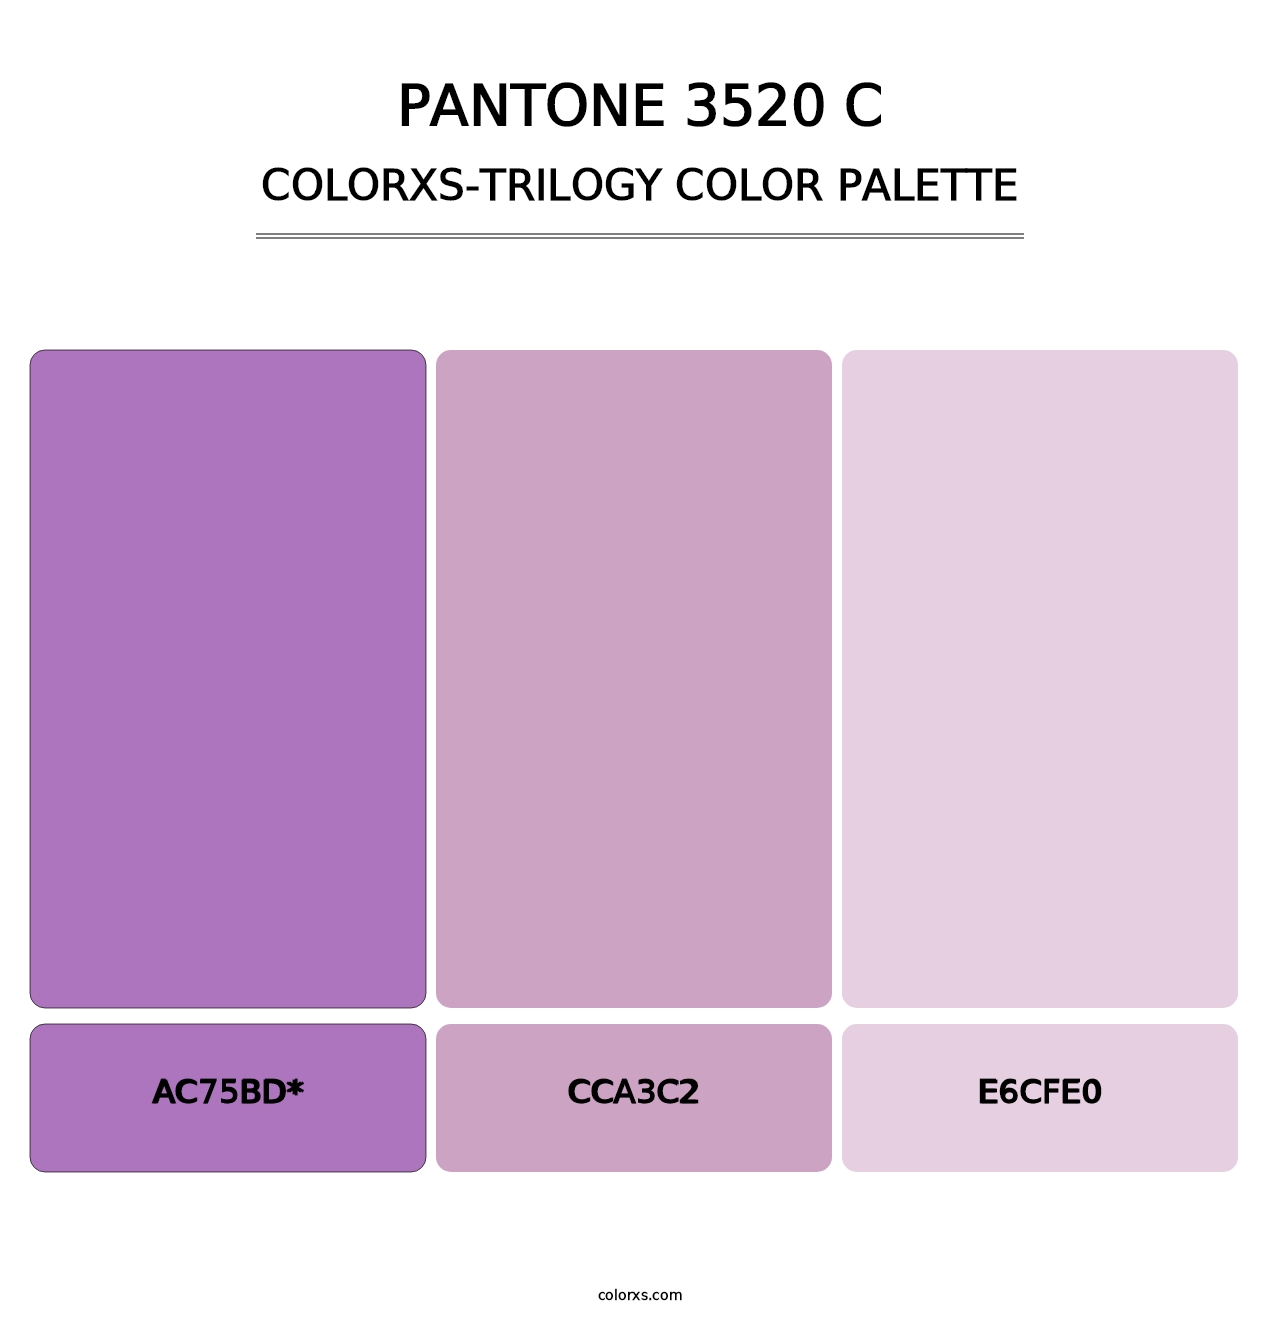 PANTONE 3520 C - Colorxs Trilogy Palette